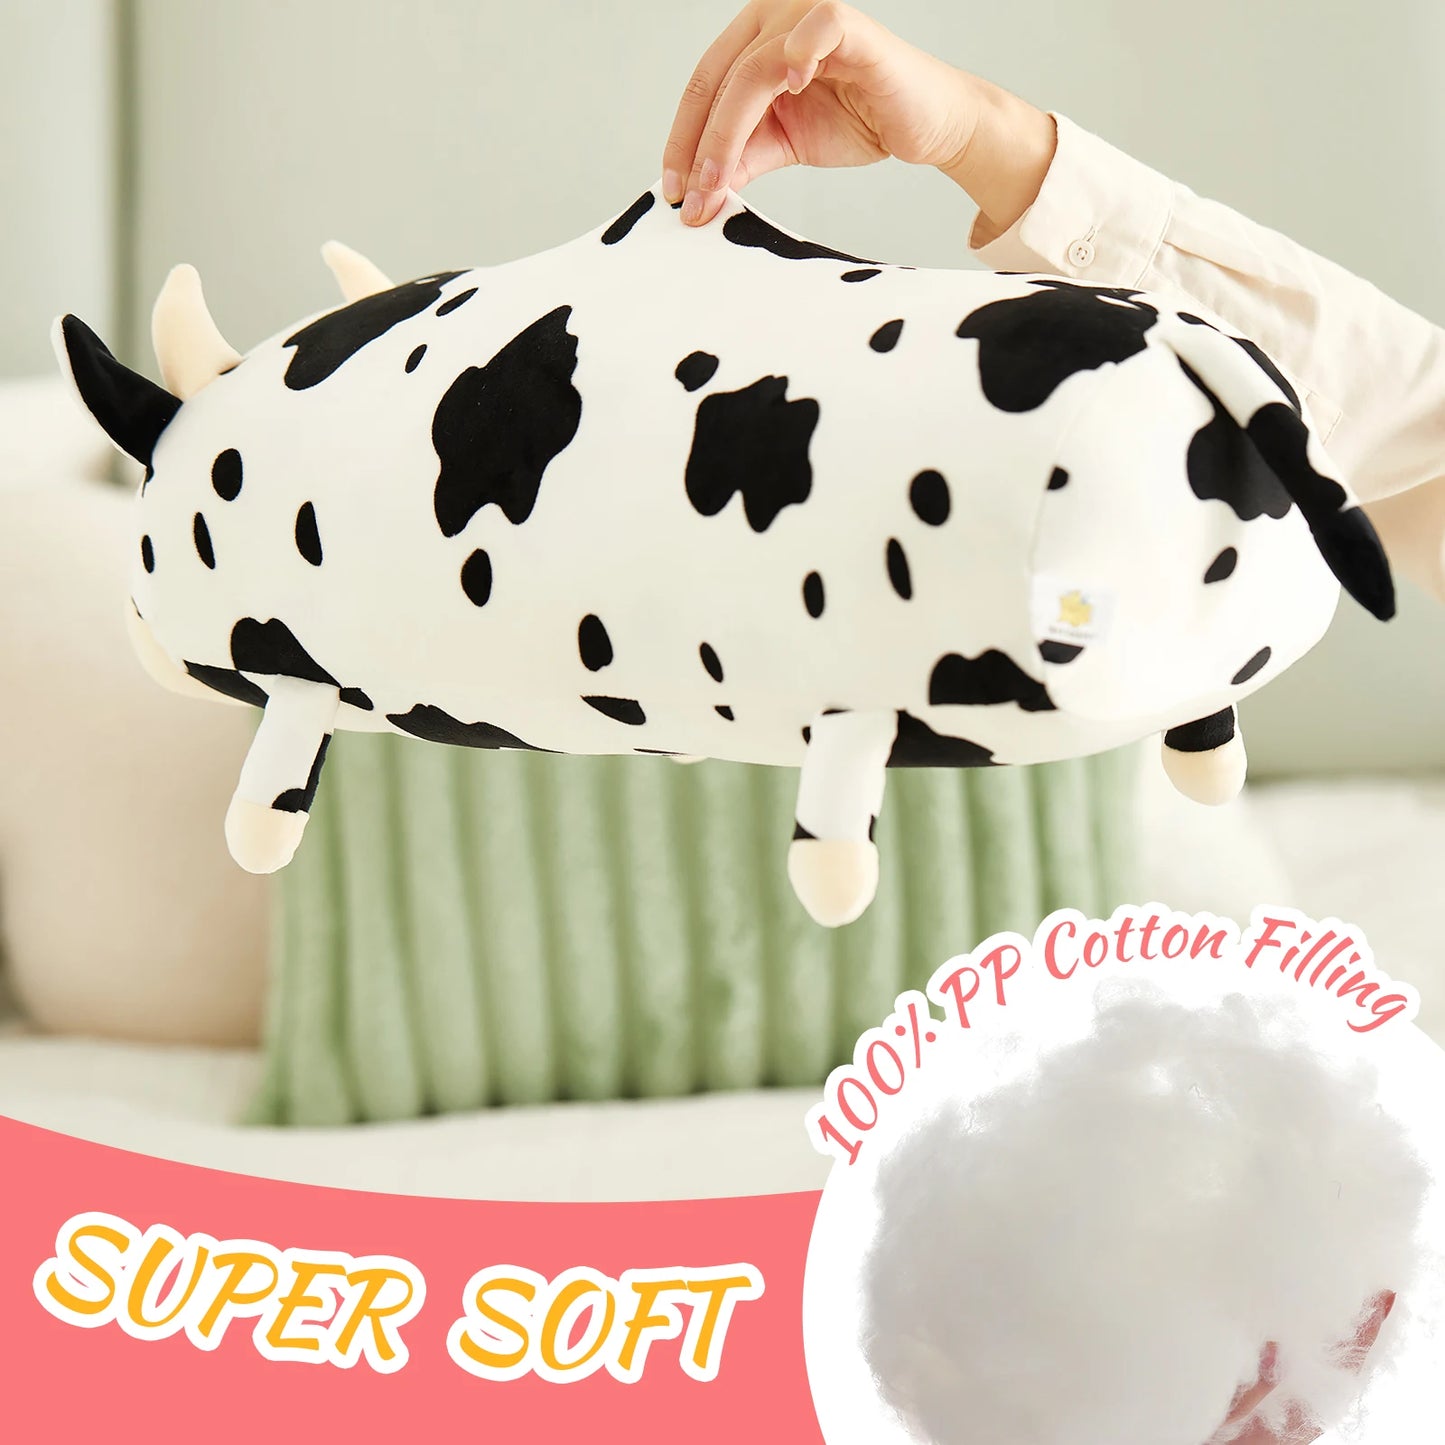 48cm Soft Throw Pillows Cow Long Doll